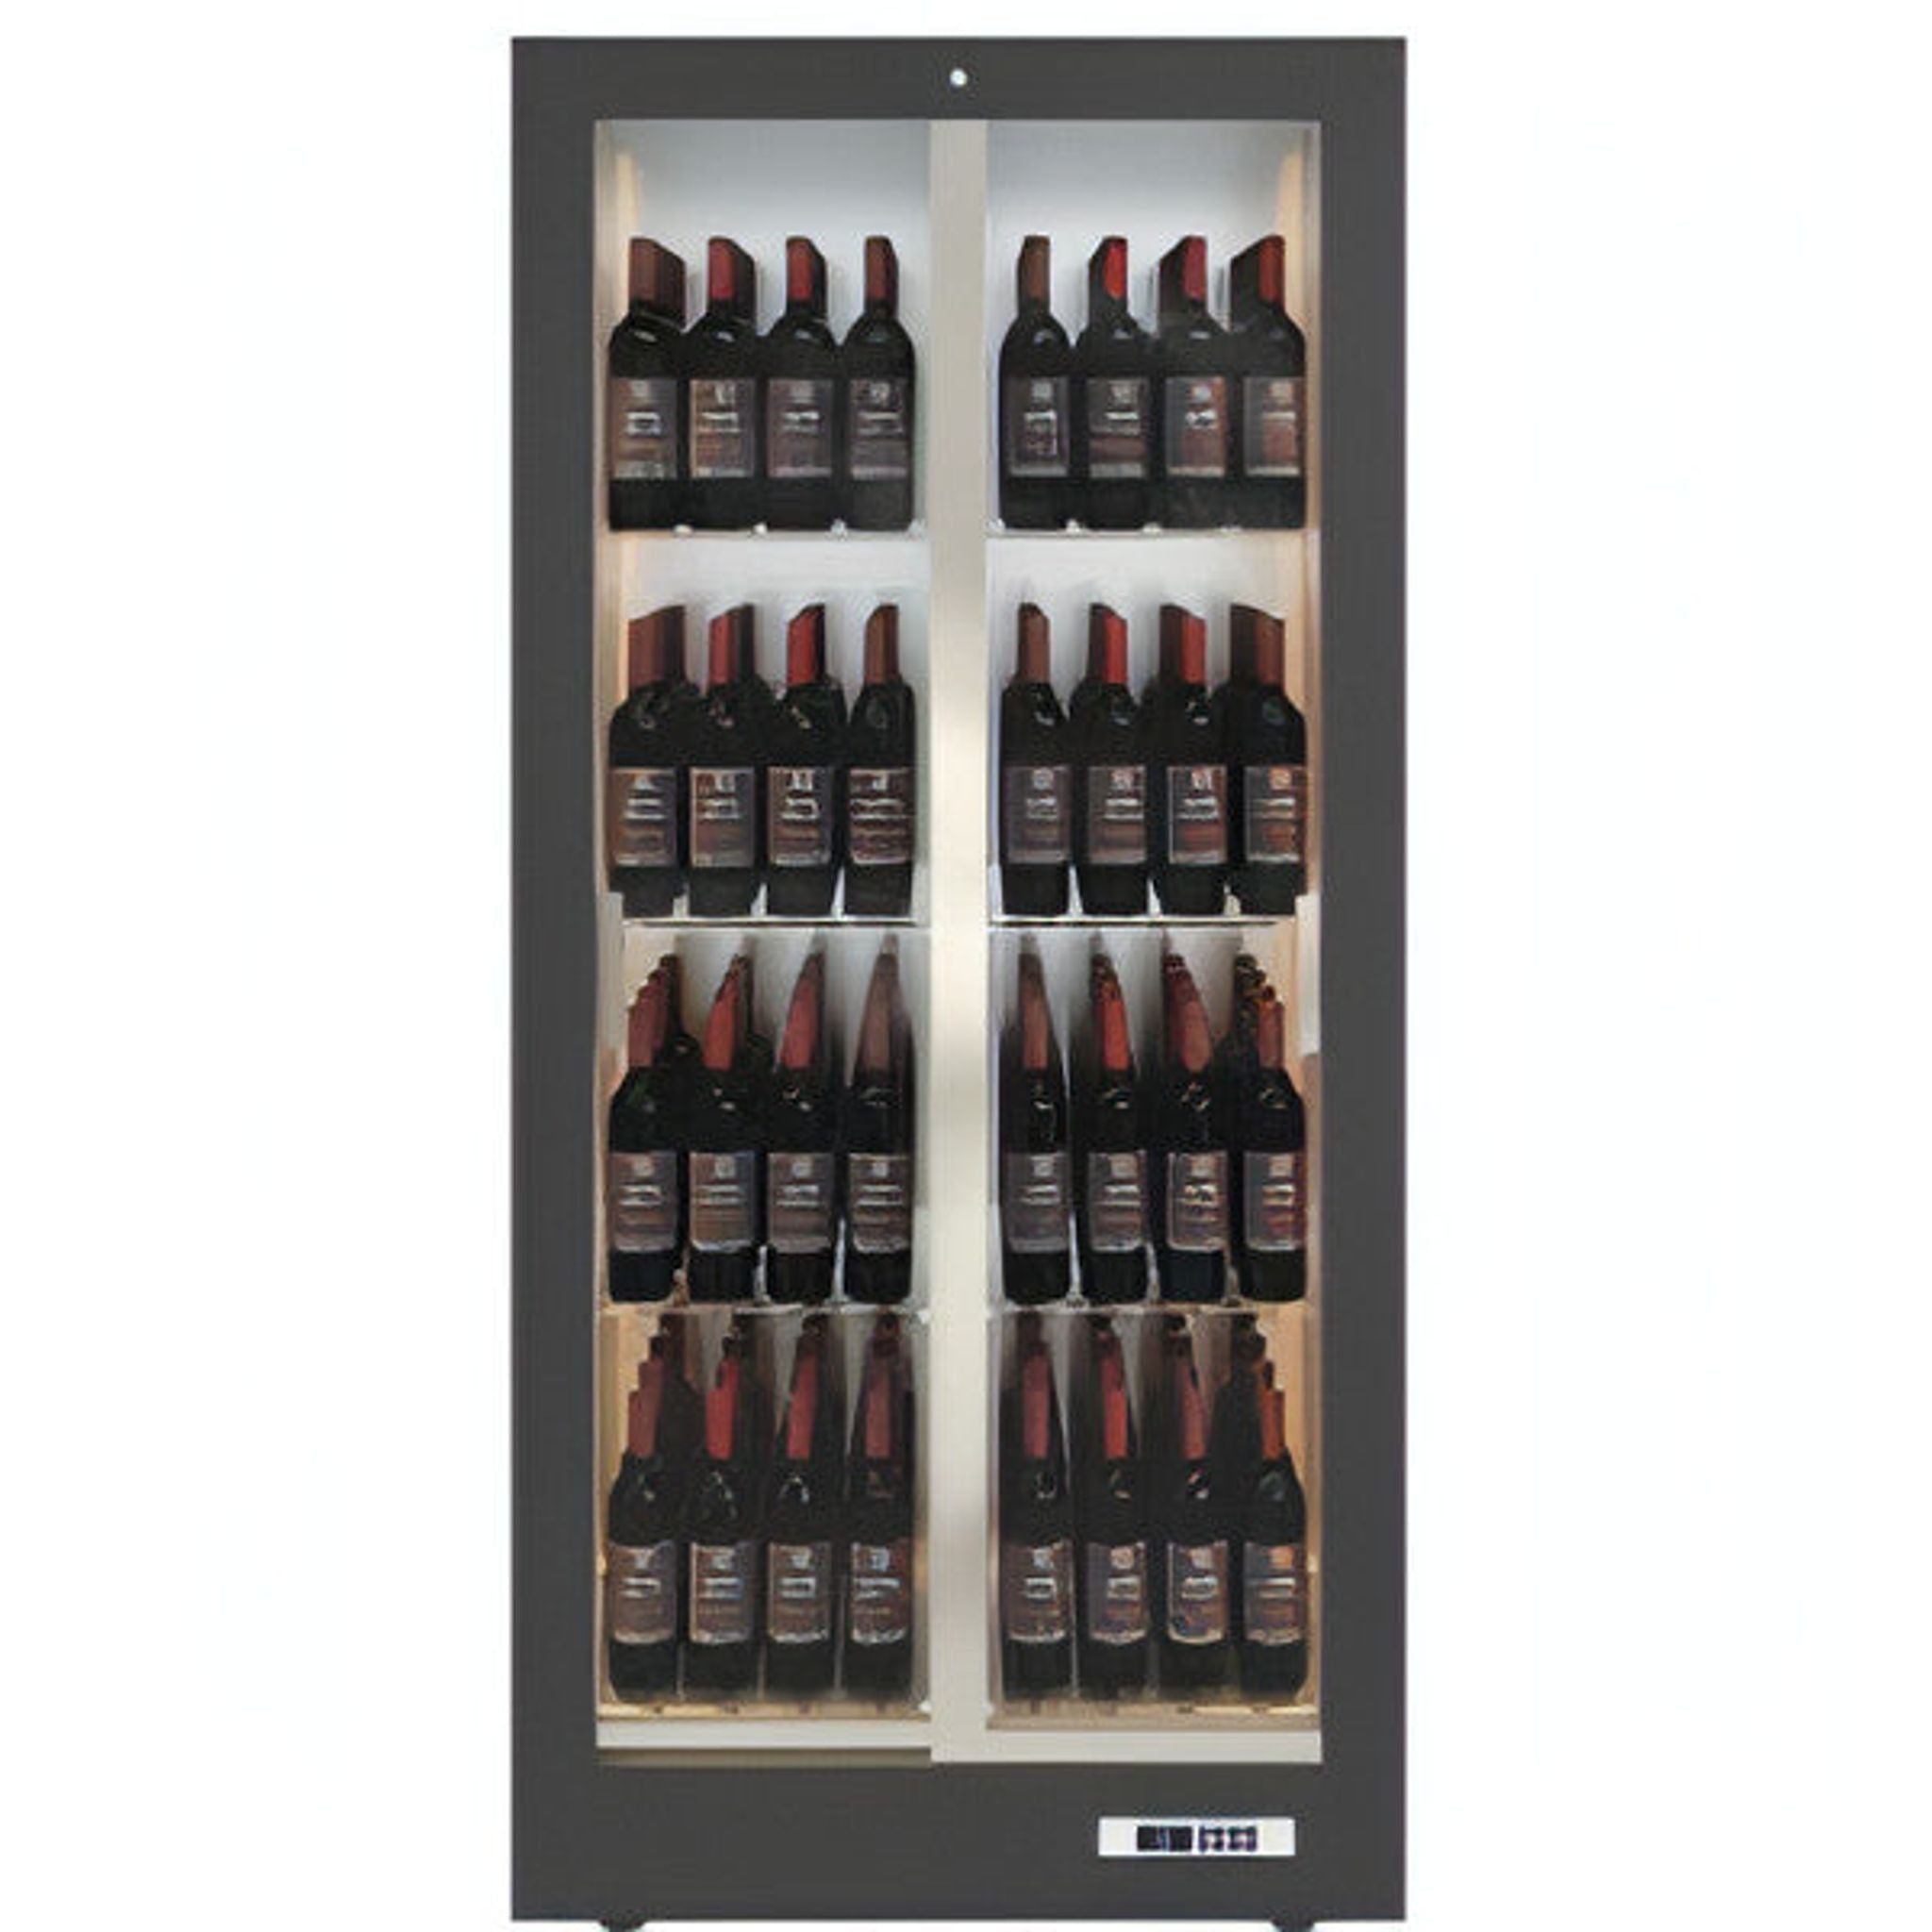 Teca Vino - Wine Wall TV13 - Glass Shelving - For Restaurant Use